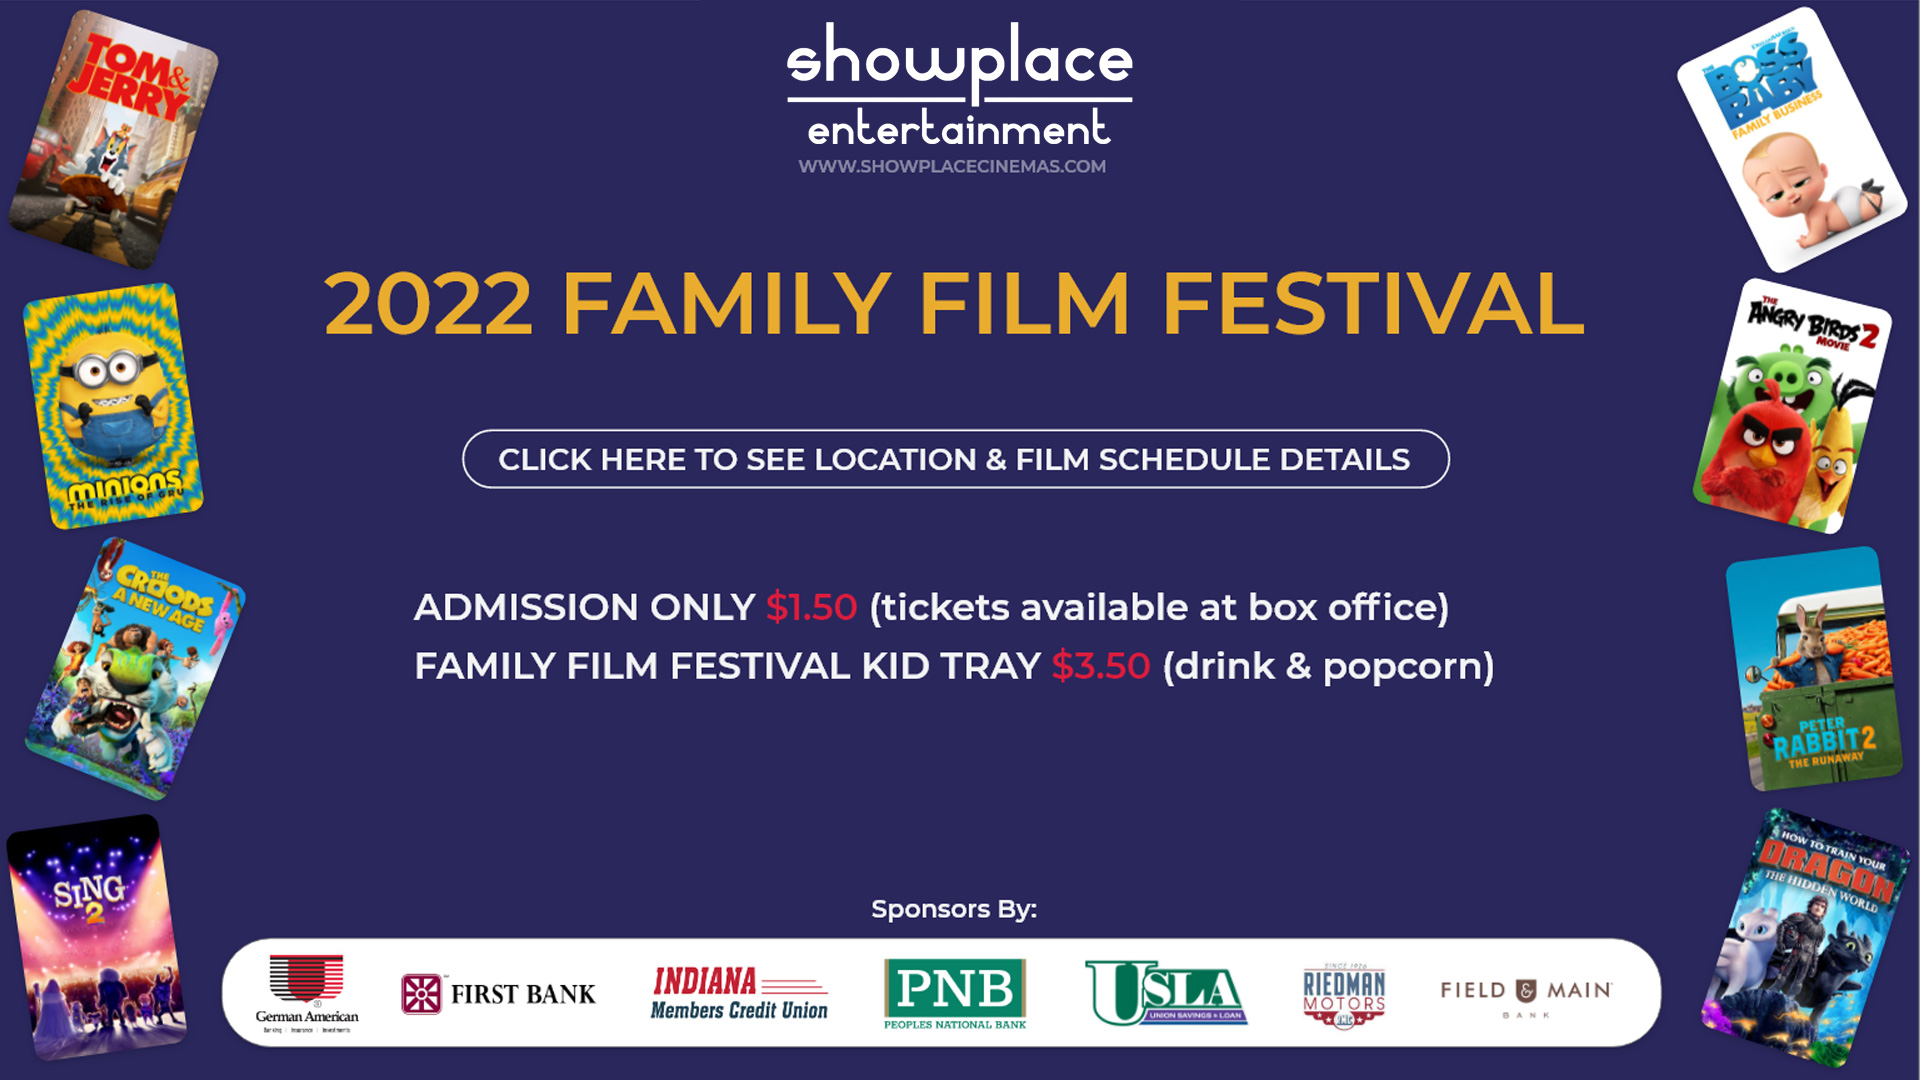 2022 Family Film Festival image